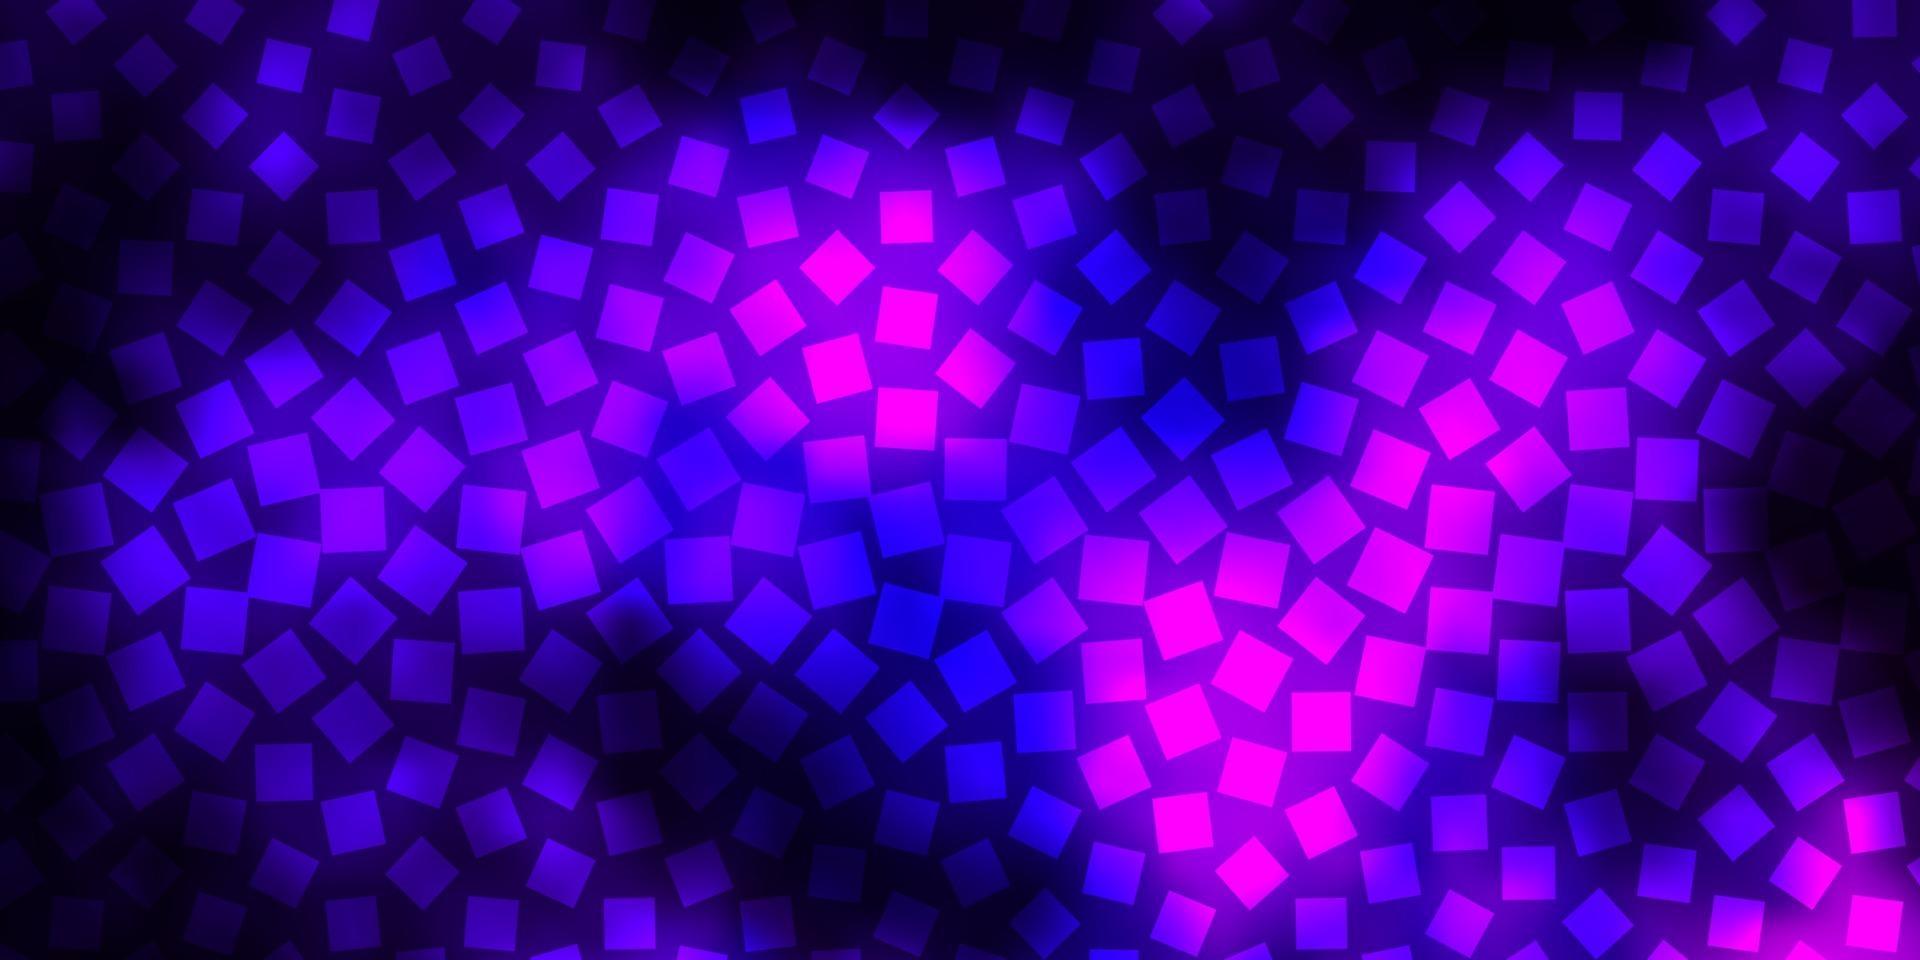 donkerpaars, roze vectorlay-out met lijnen, rechthoeken. vector